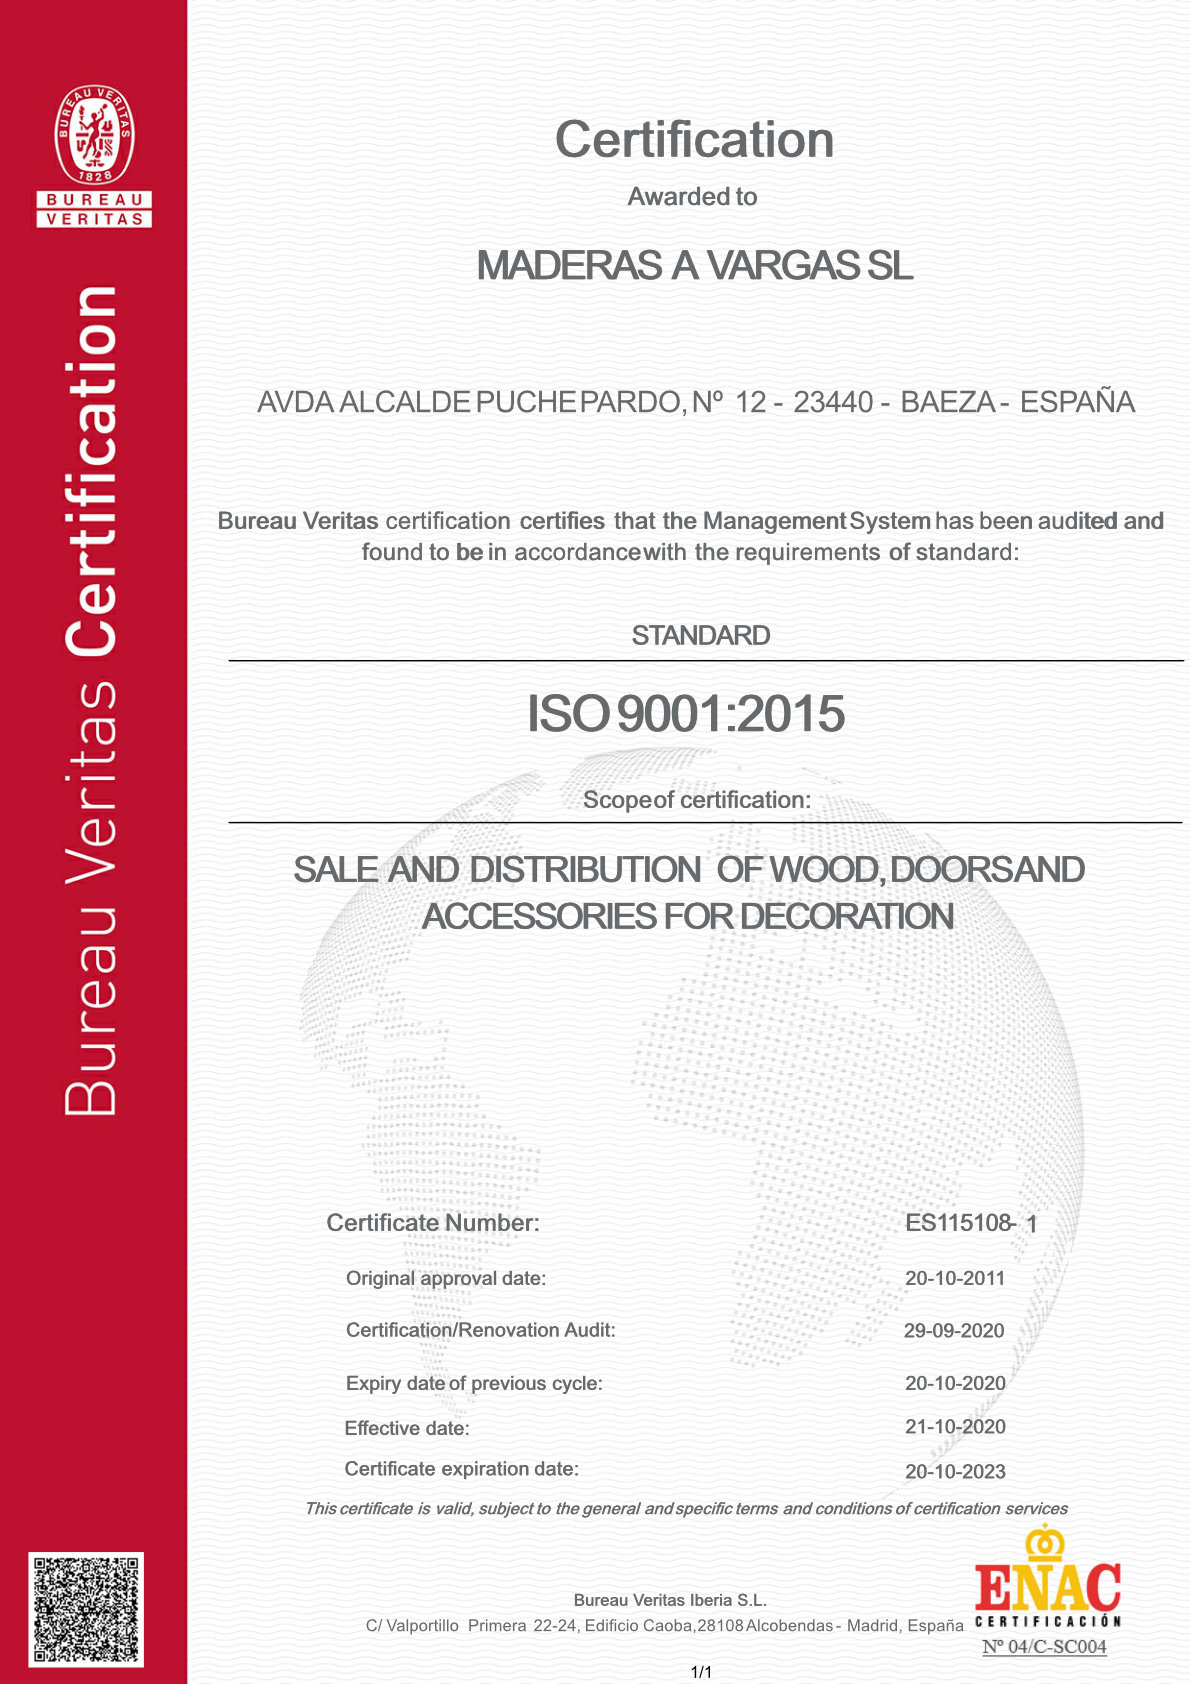 Certificado de calidad de Maderas vargas en Inglés